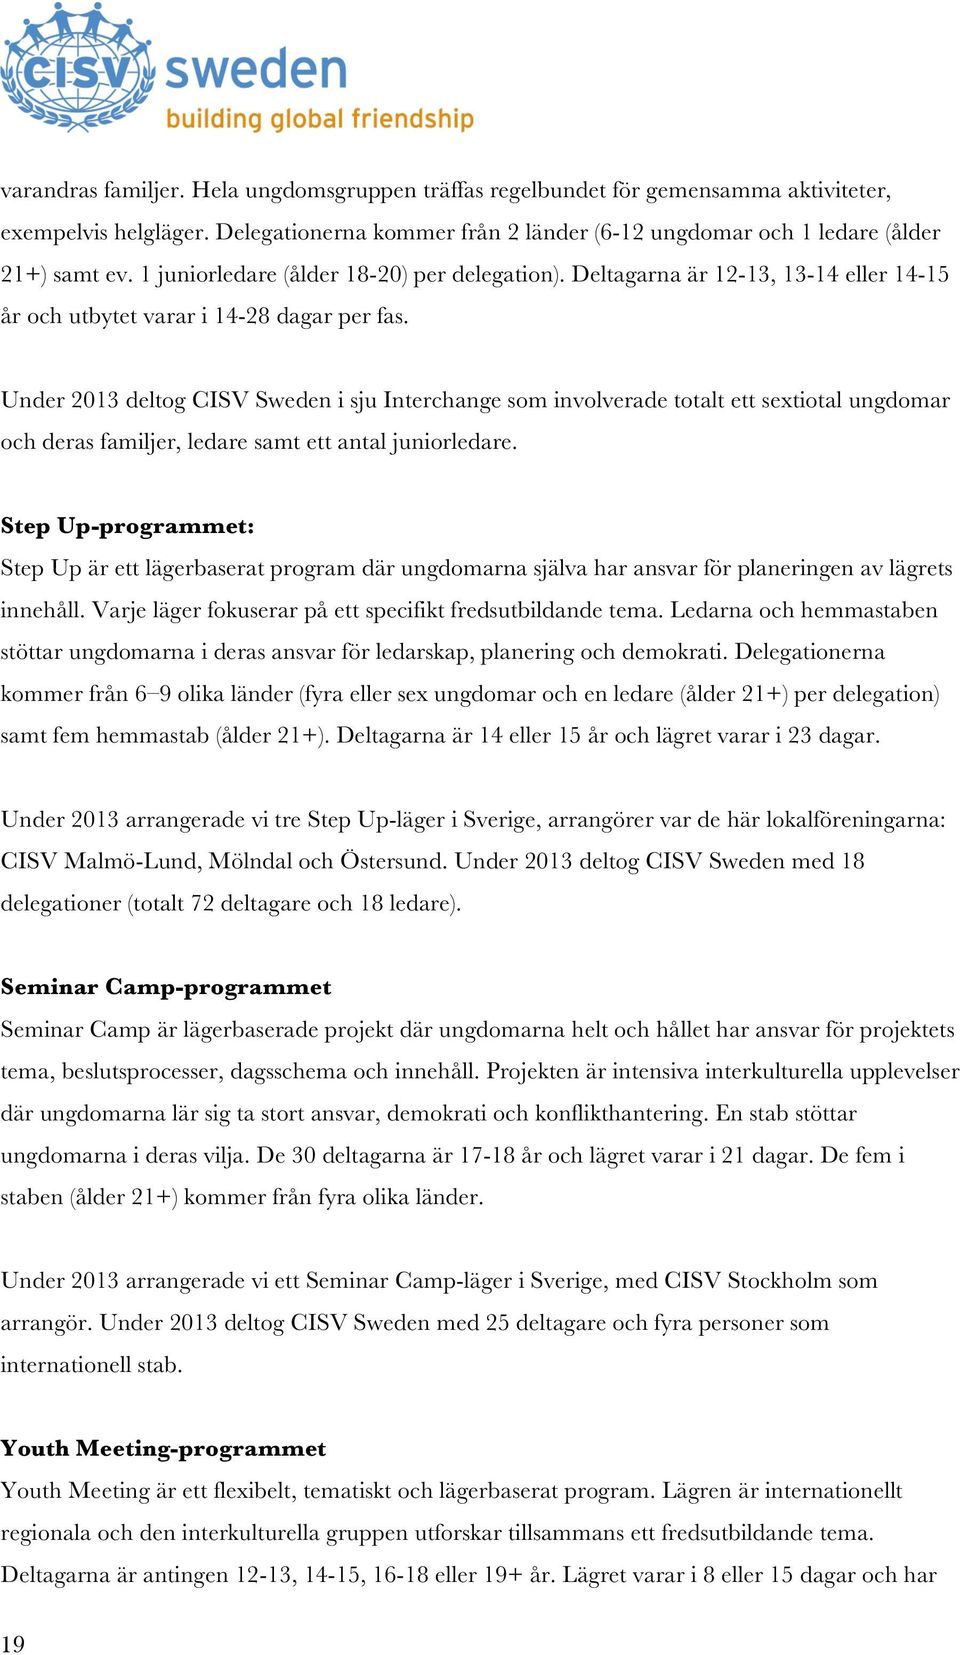 Under 2013 deltog CISV Sweden i sju Interchange som involverade totalt ett sextiotal ungdomar och deras familjer, ledare samt ett antal juniorledare.